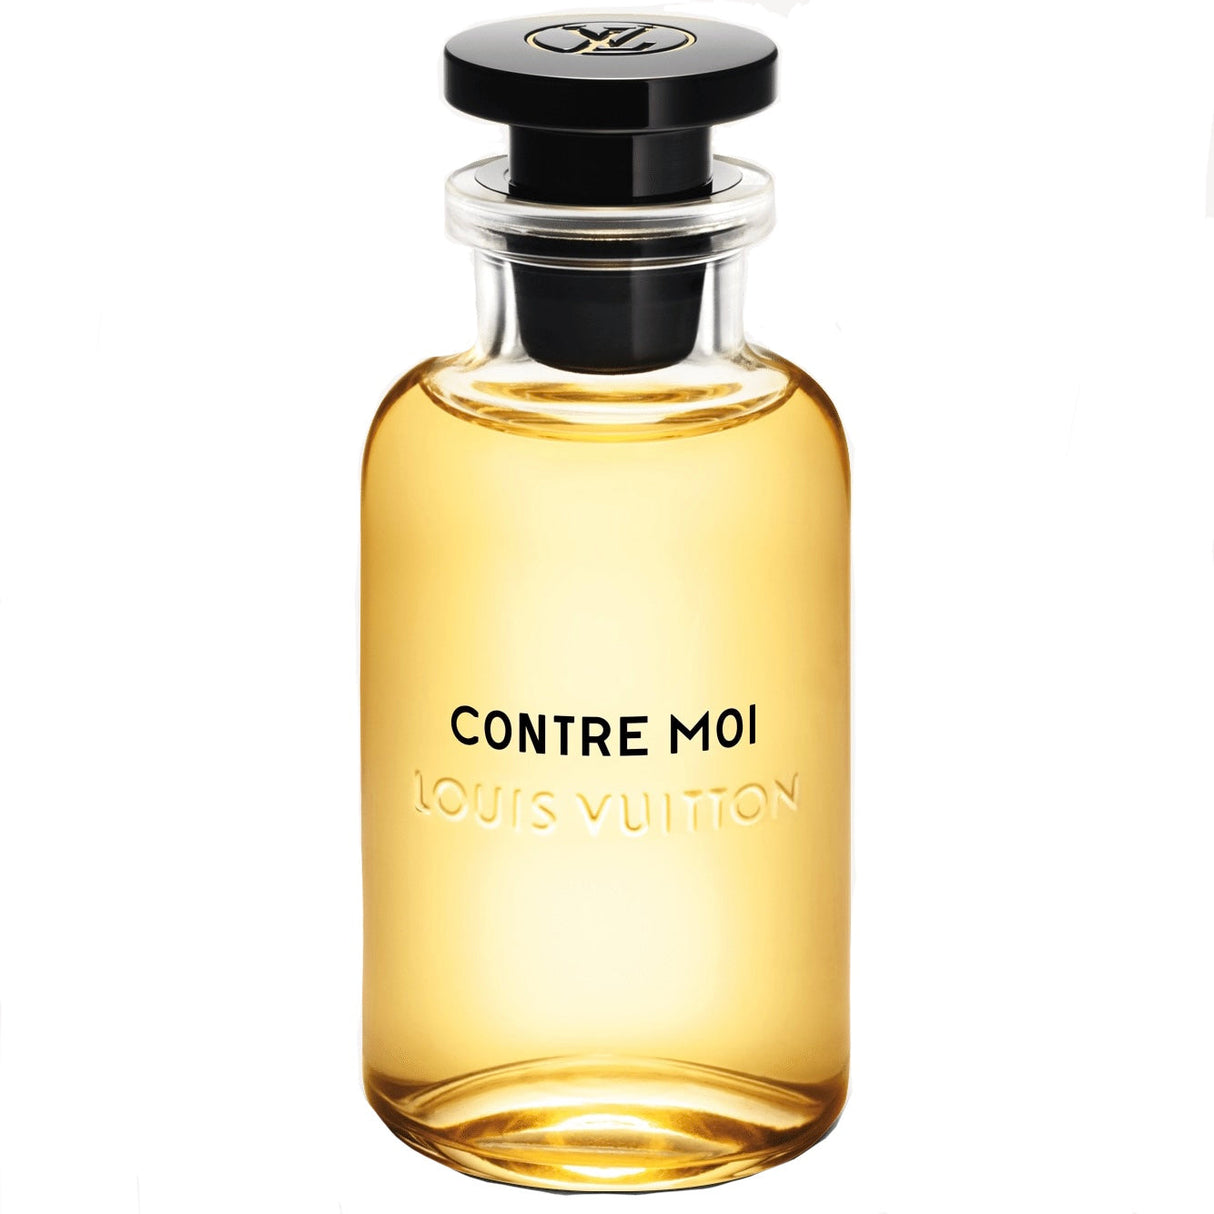 Louis Vuitton Contre Moi Eau De Parfum - The Scent Samples